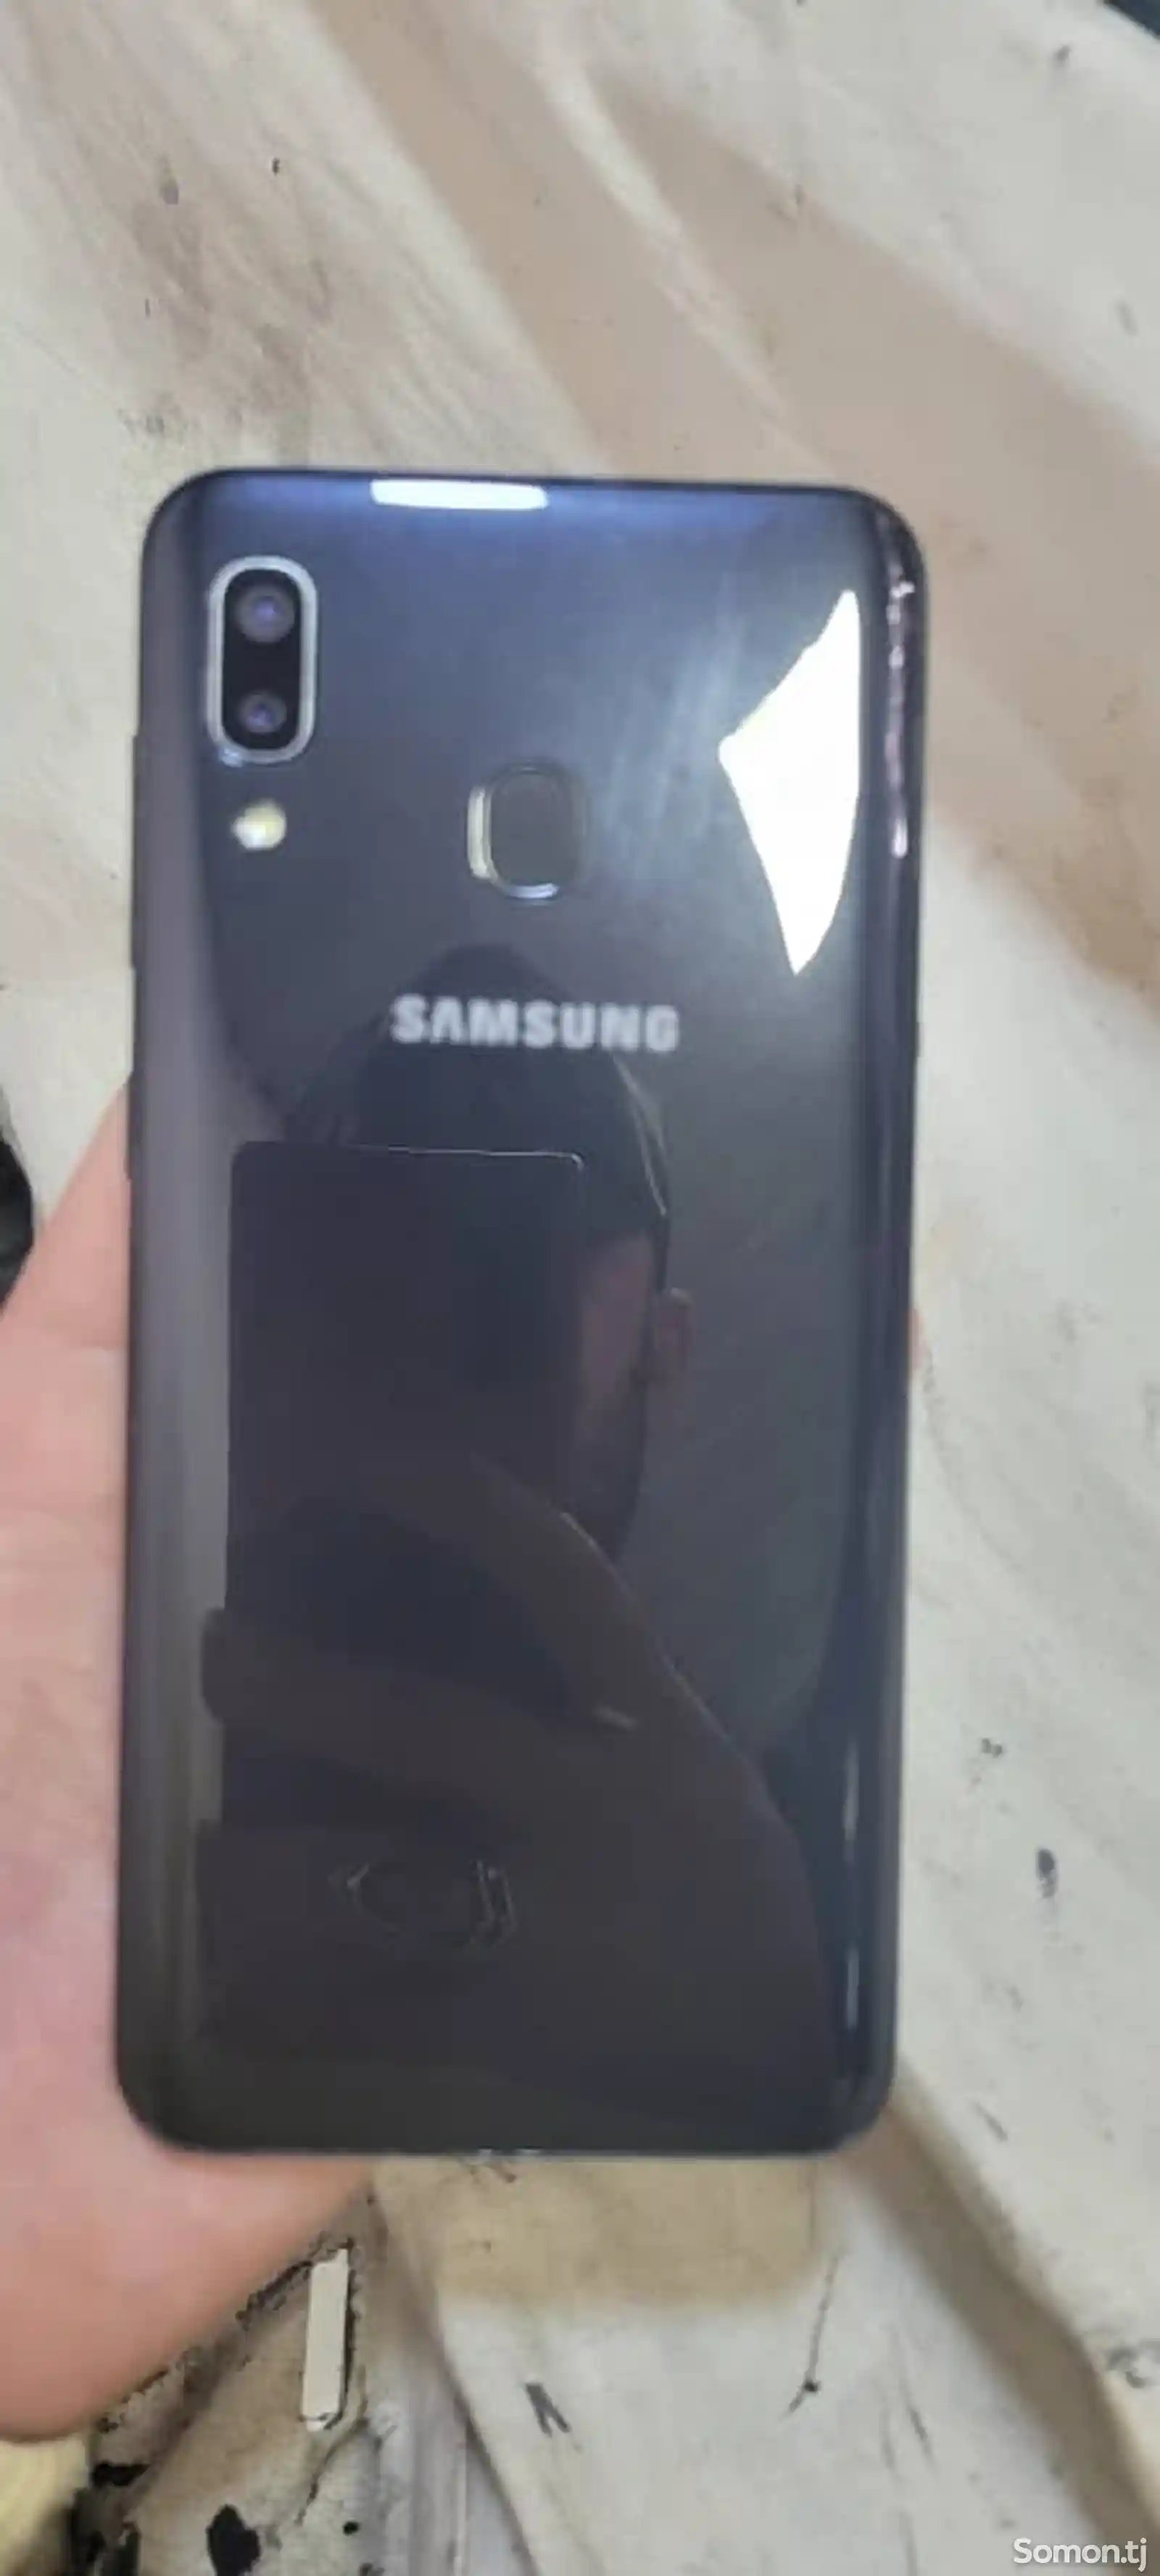 Samsung Galaxy A20-1